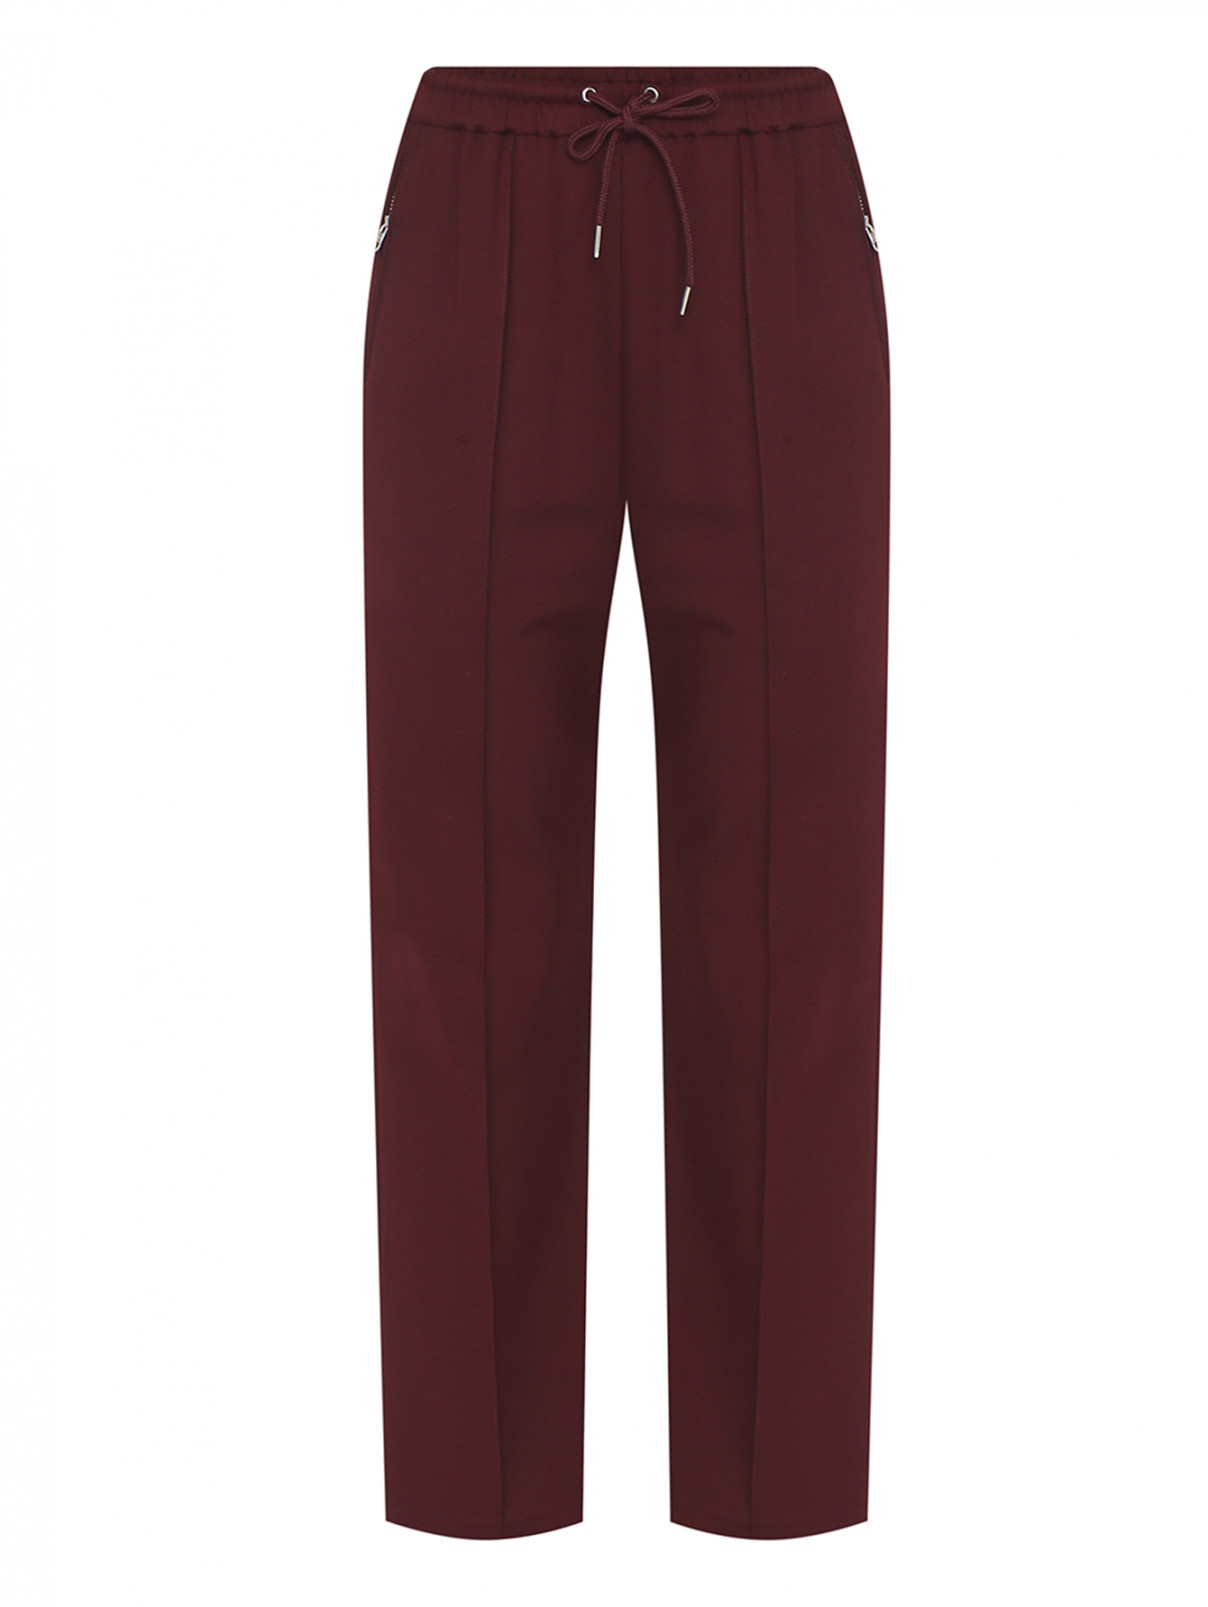 Трикотажные брюки на резинке со стрелками McQ  –  Общий вид  – Цвет:  Красный